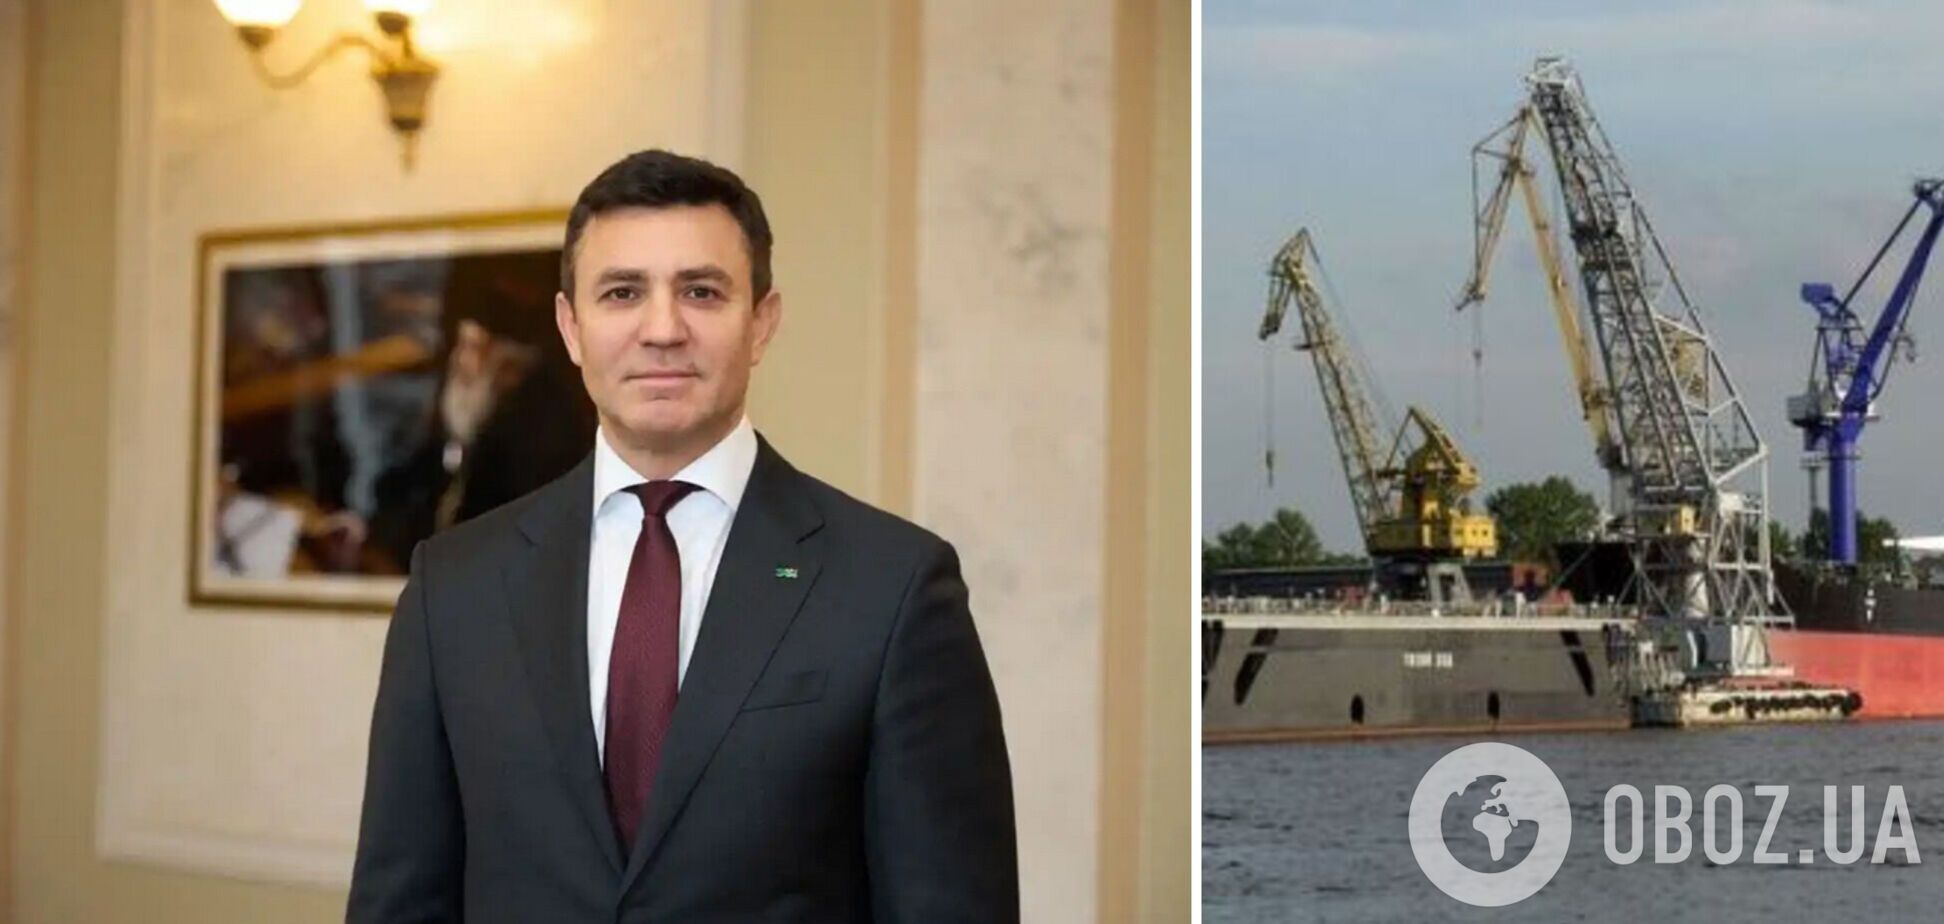 Миколу Тищенка звинуватили в причетності до захоплення майна державного порту